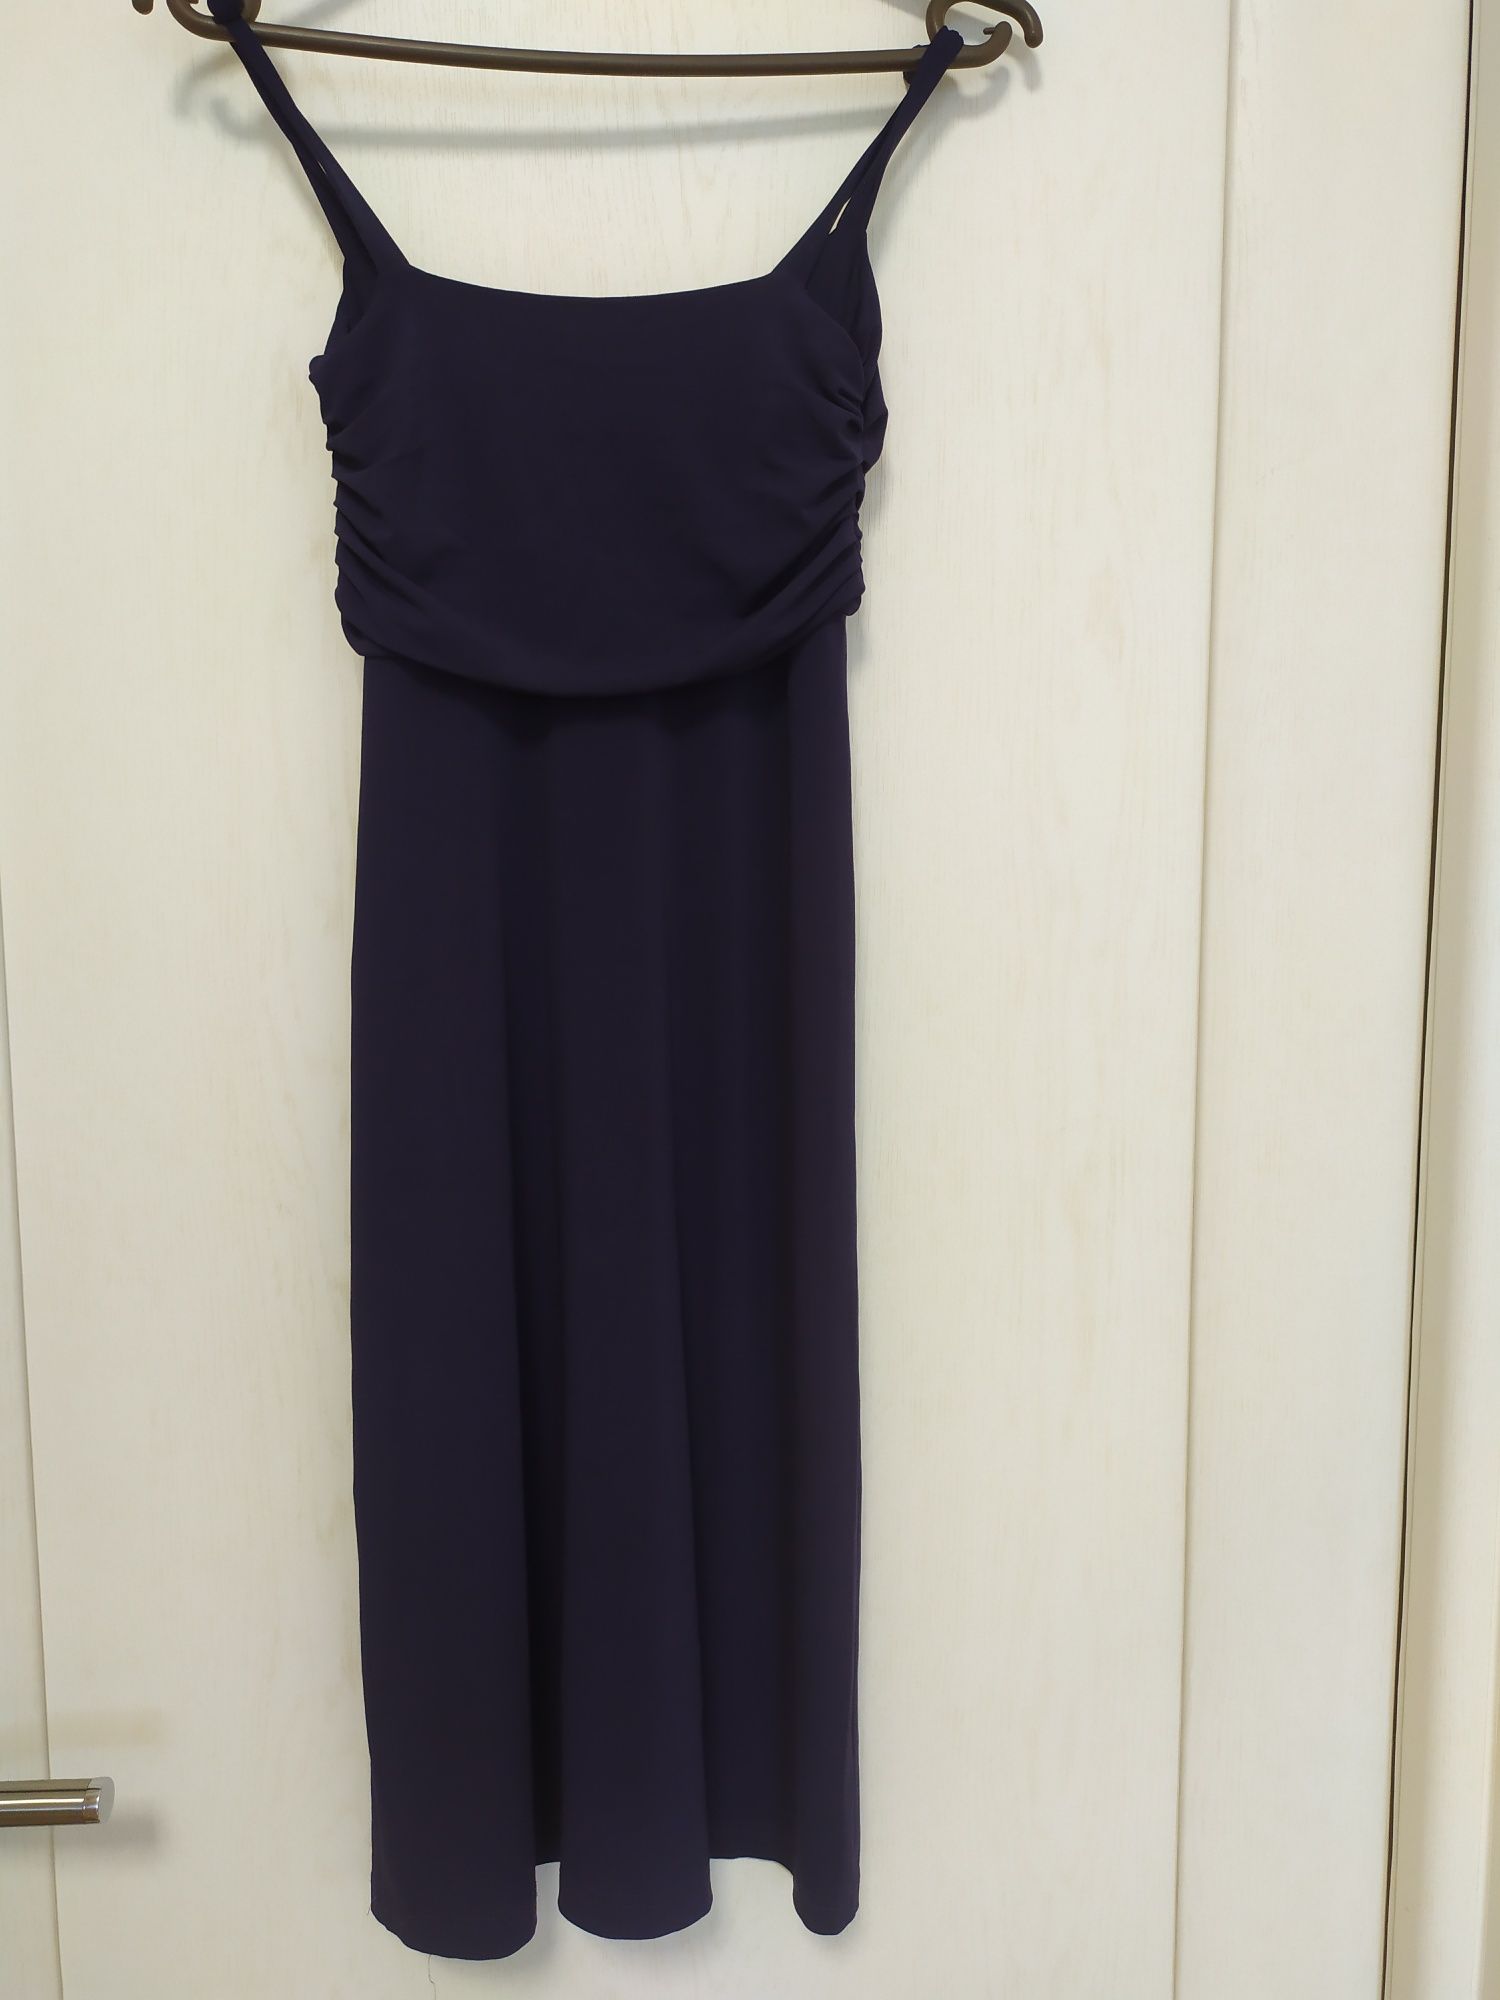 Сарафан, плаття фіолетового кольору XS